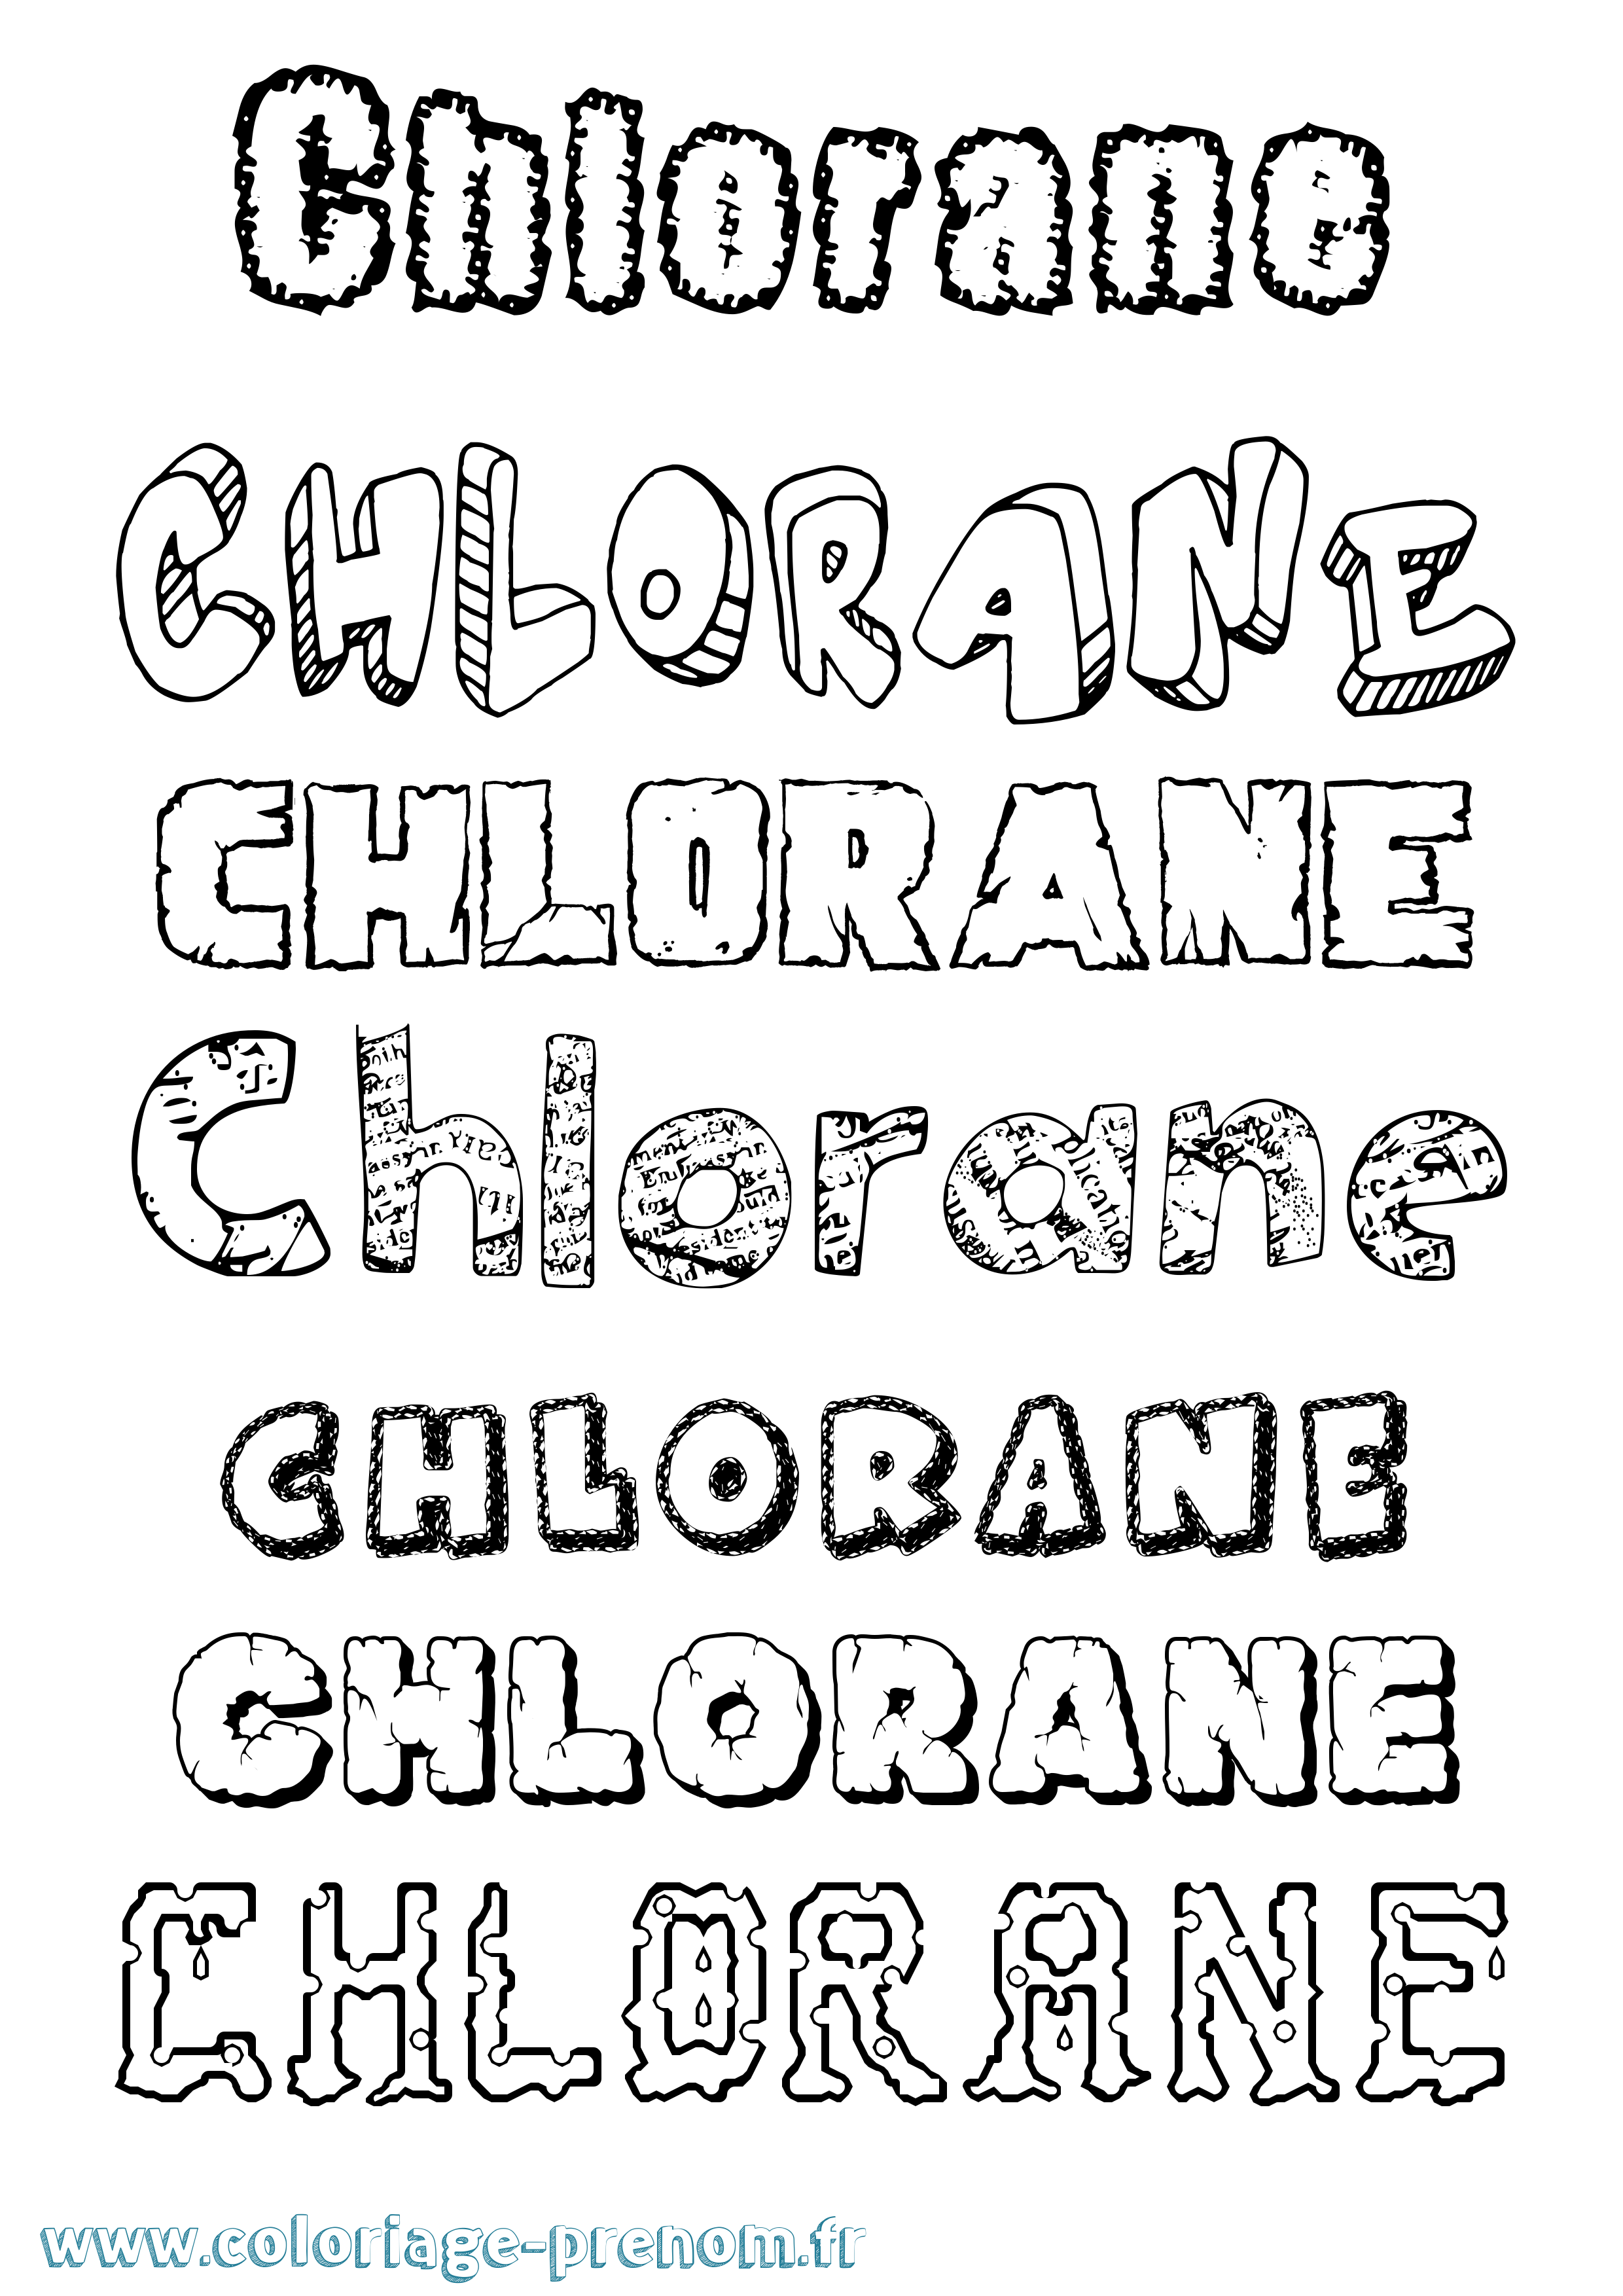 Coloriage prénom Chlorane Destructuré